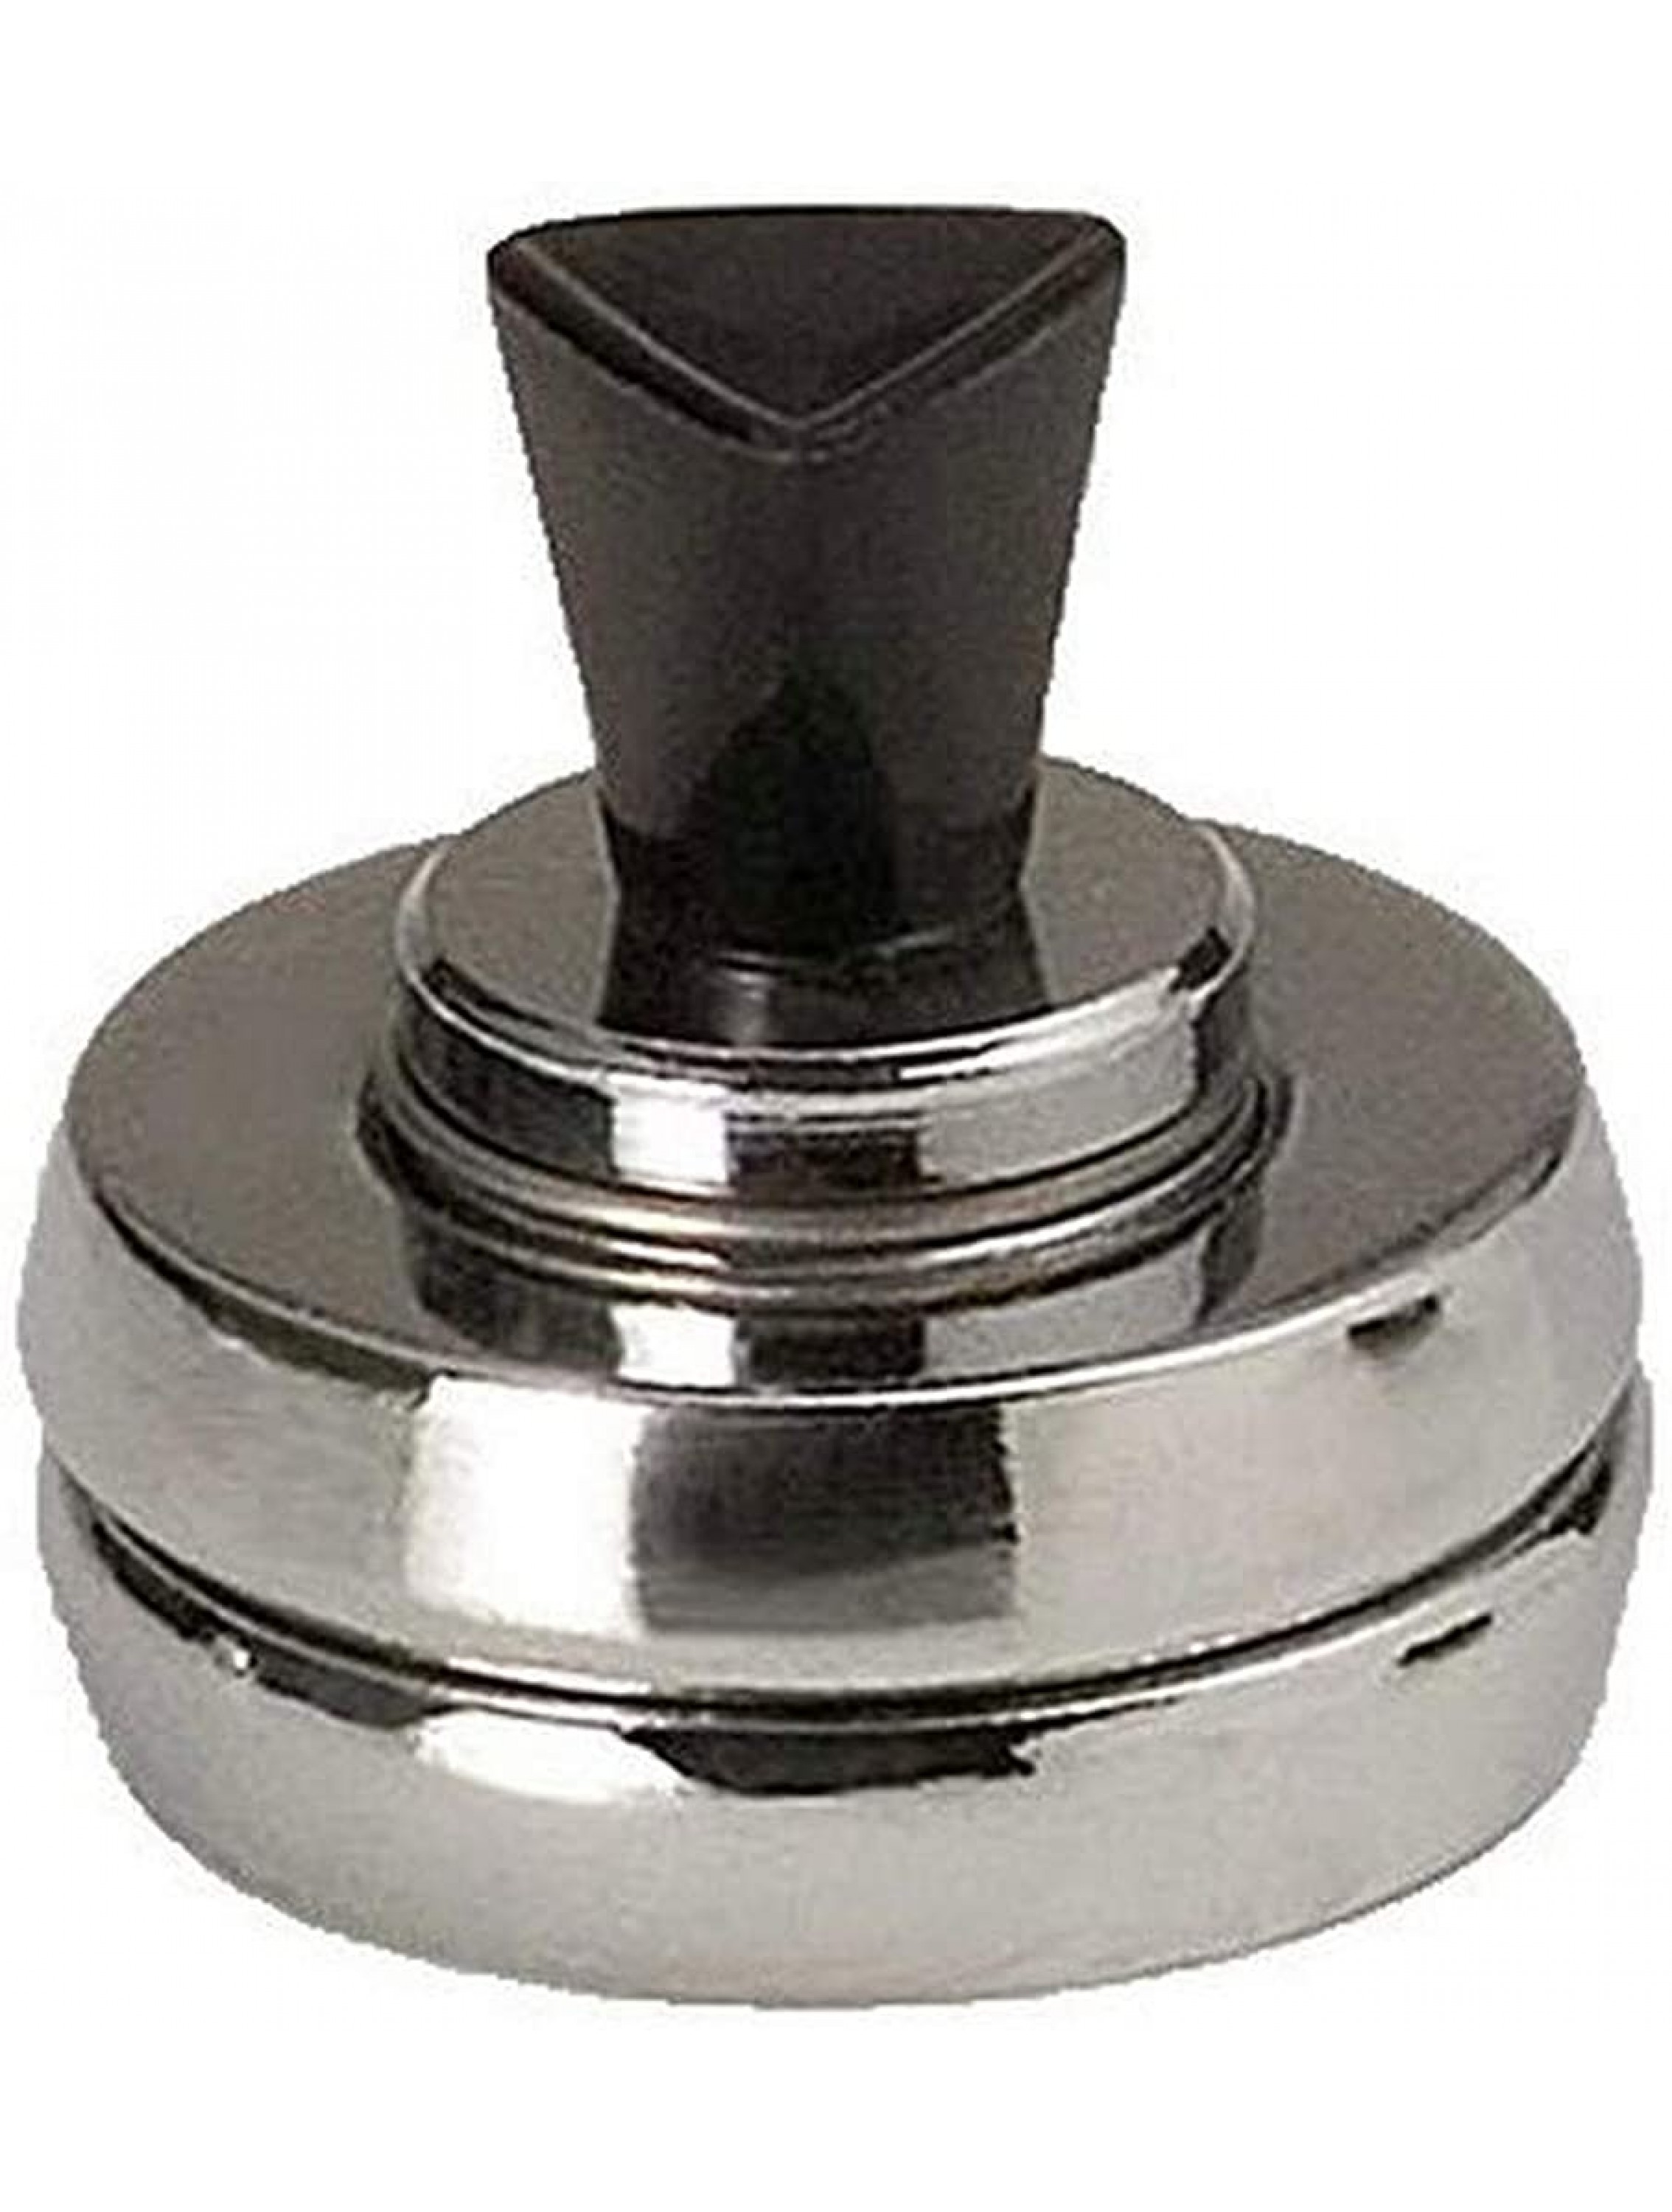 Presto Canner Pressure Regulator Pack of 1 Silver - B3E39V82V